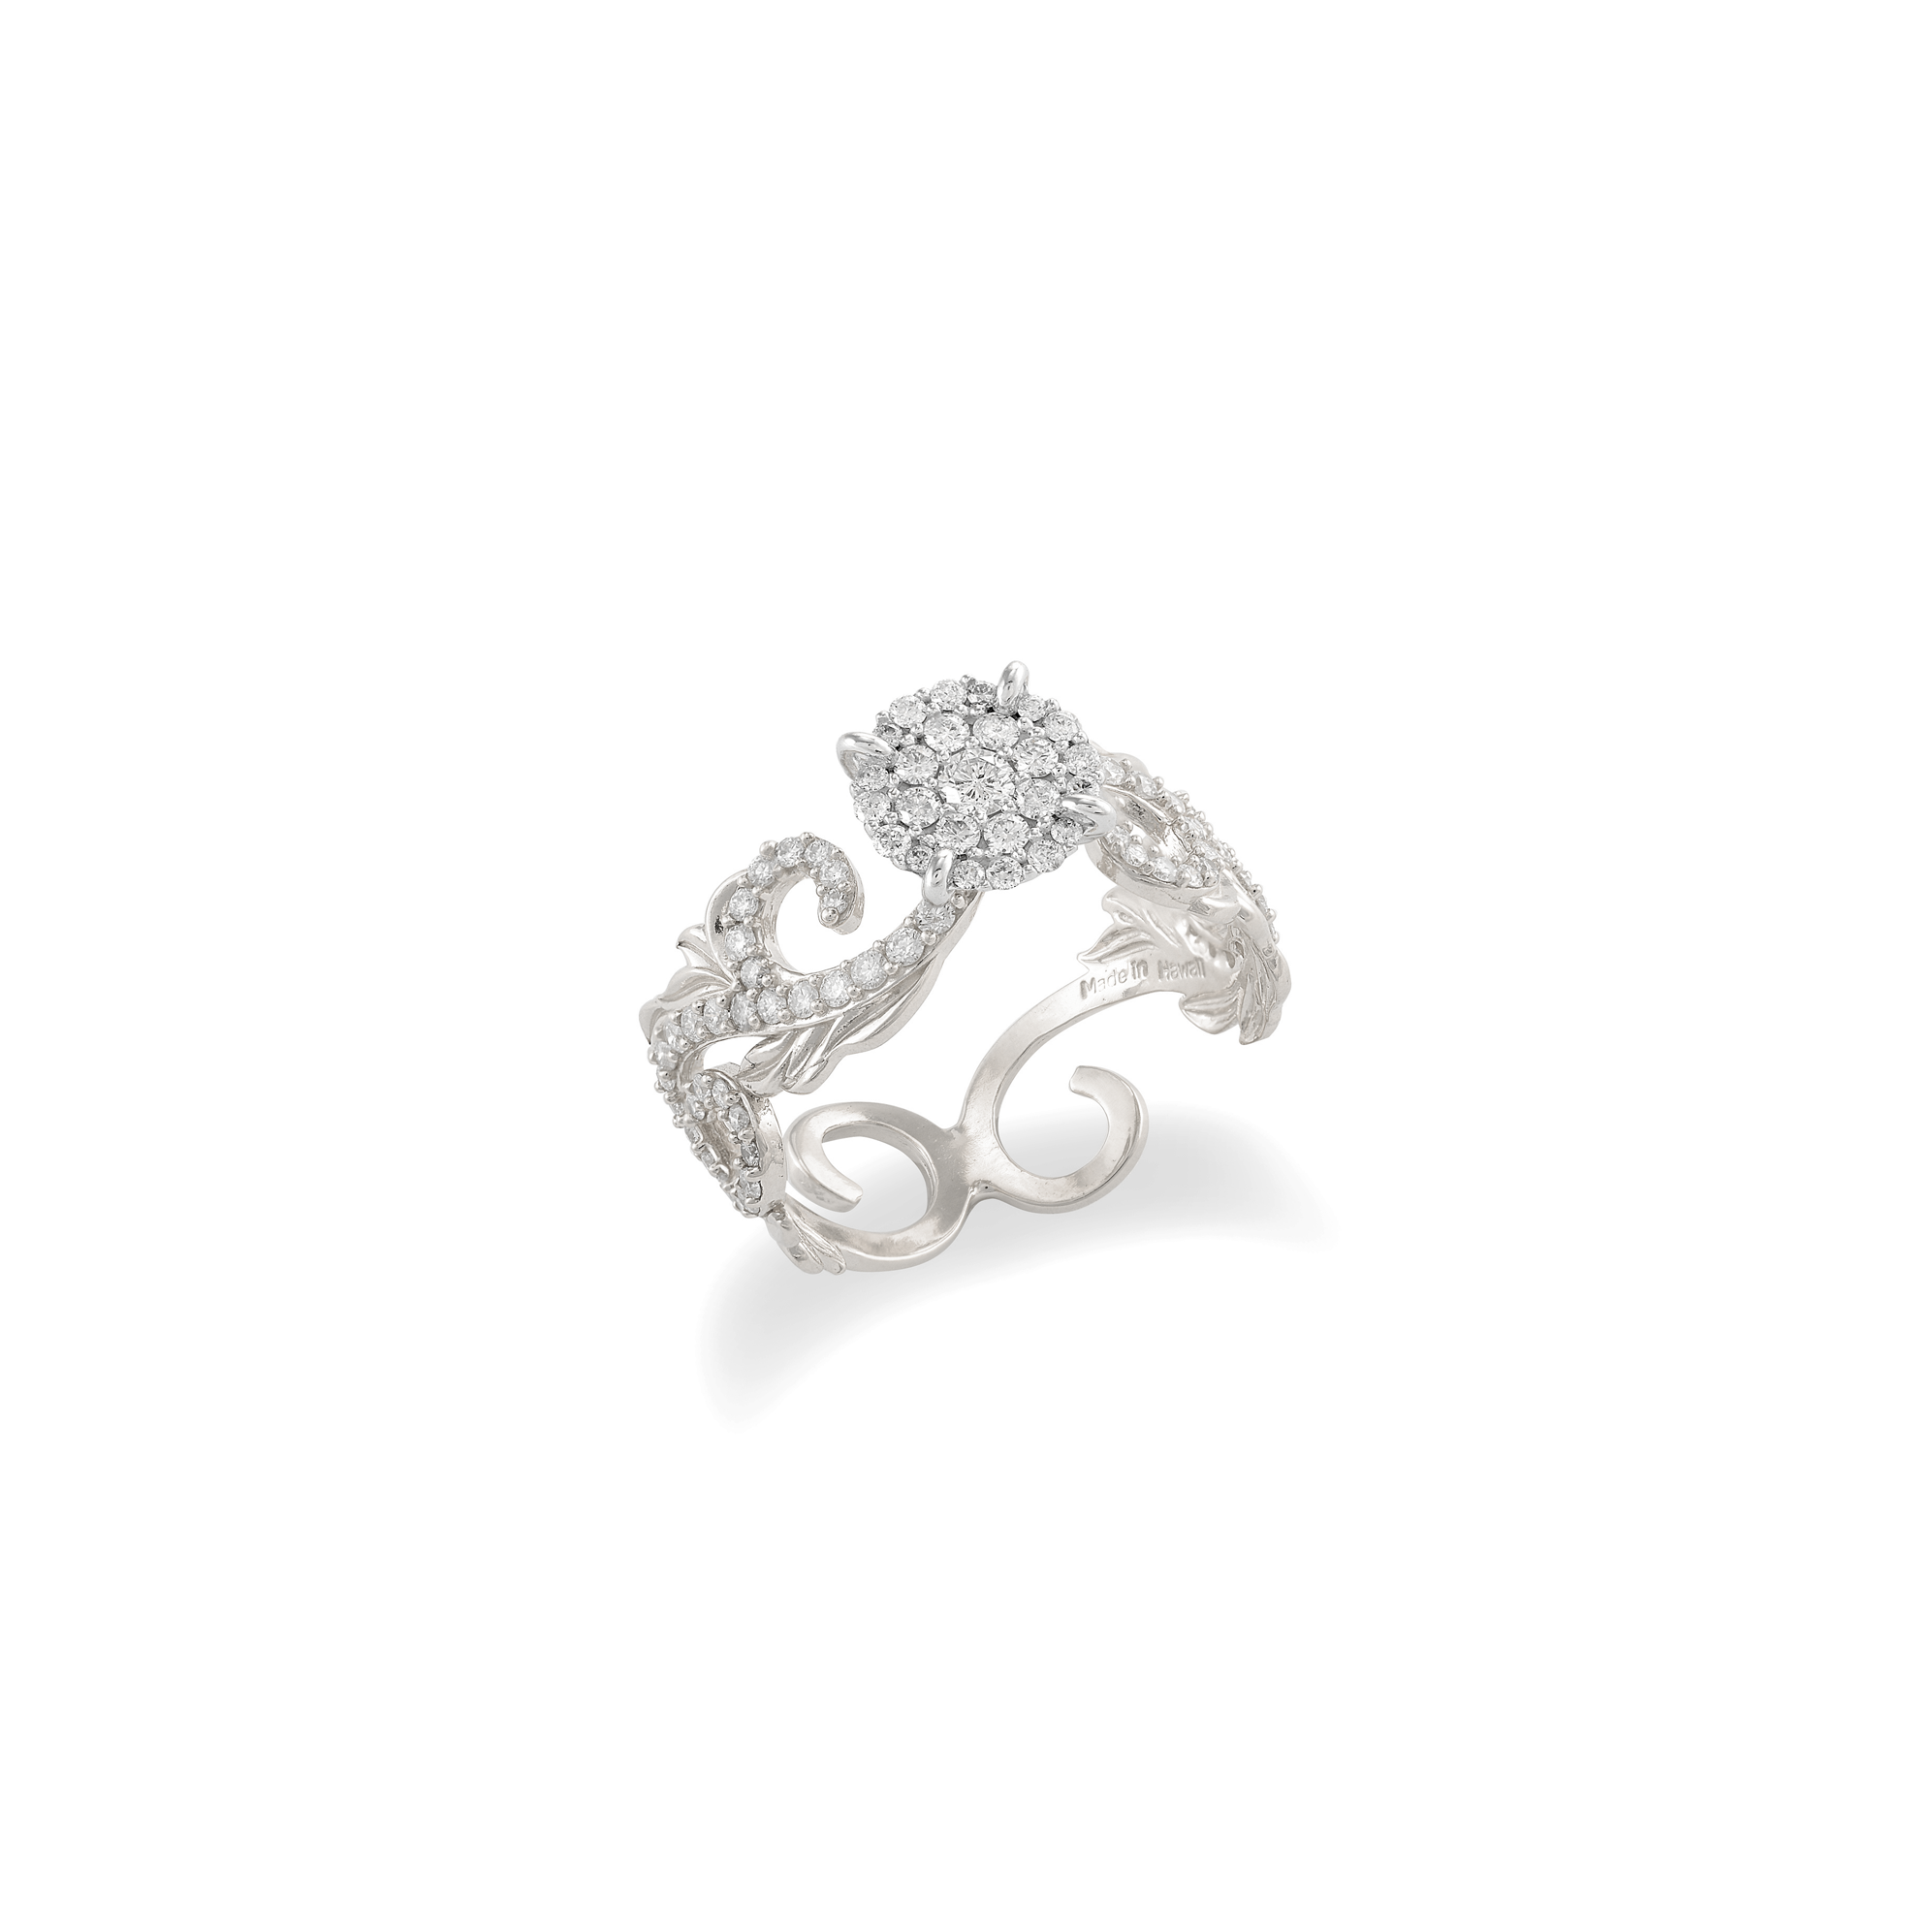 ホワイトゴールドでダイヤモンドとハワイアンの家宝婚約指輪